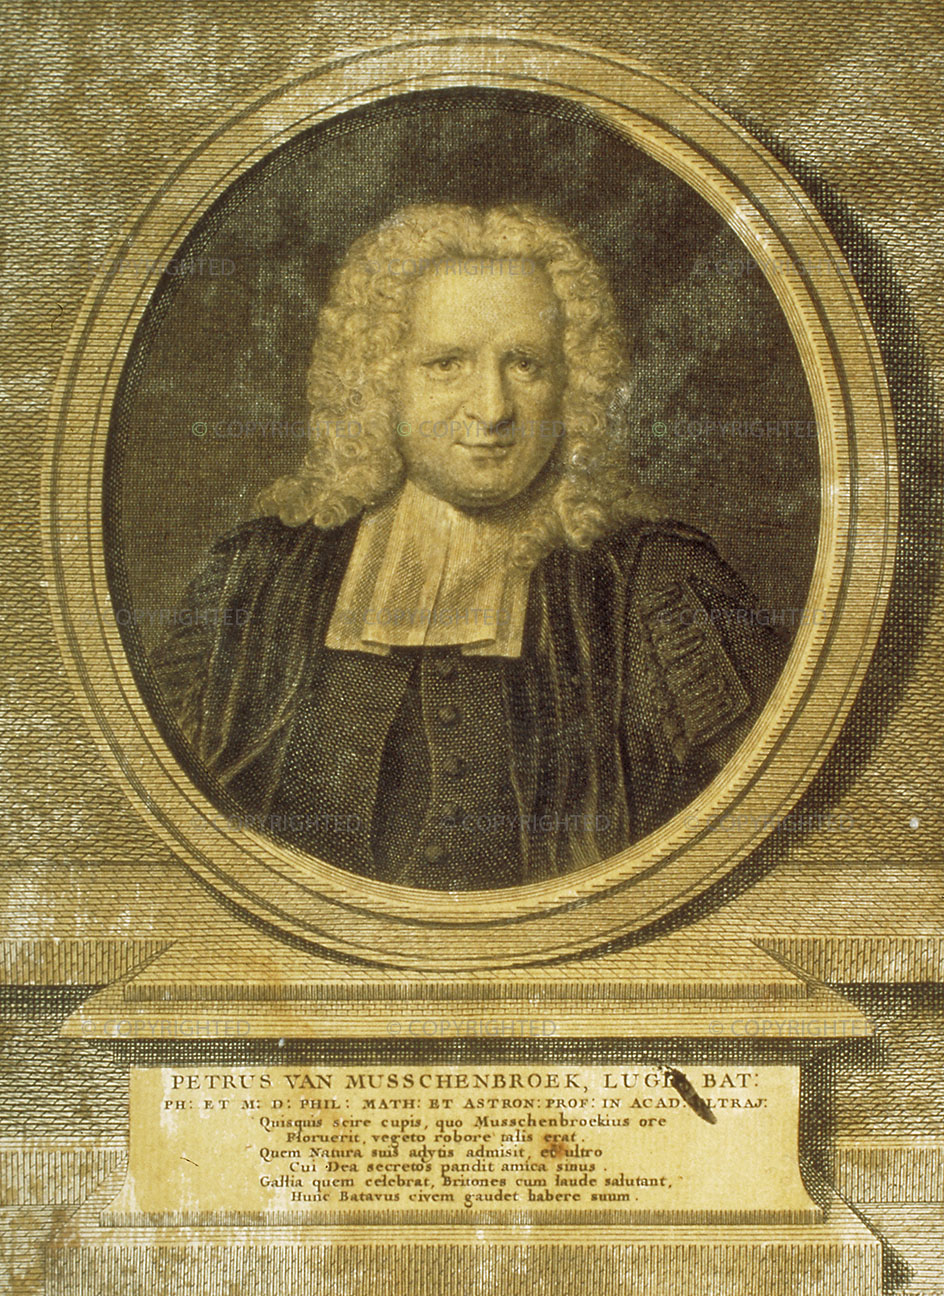 Petrus van Musschenbroek